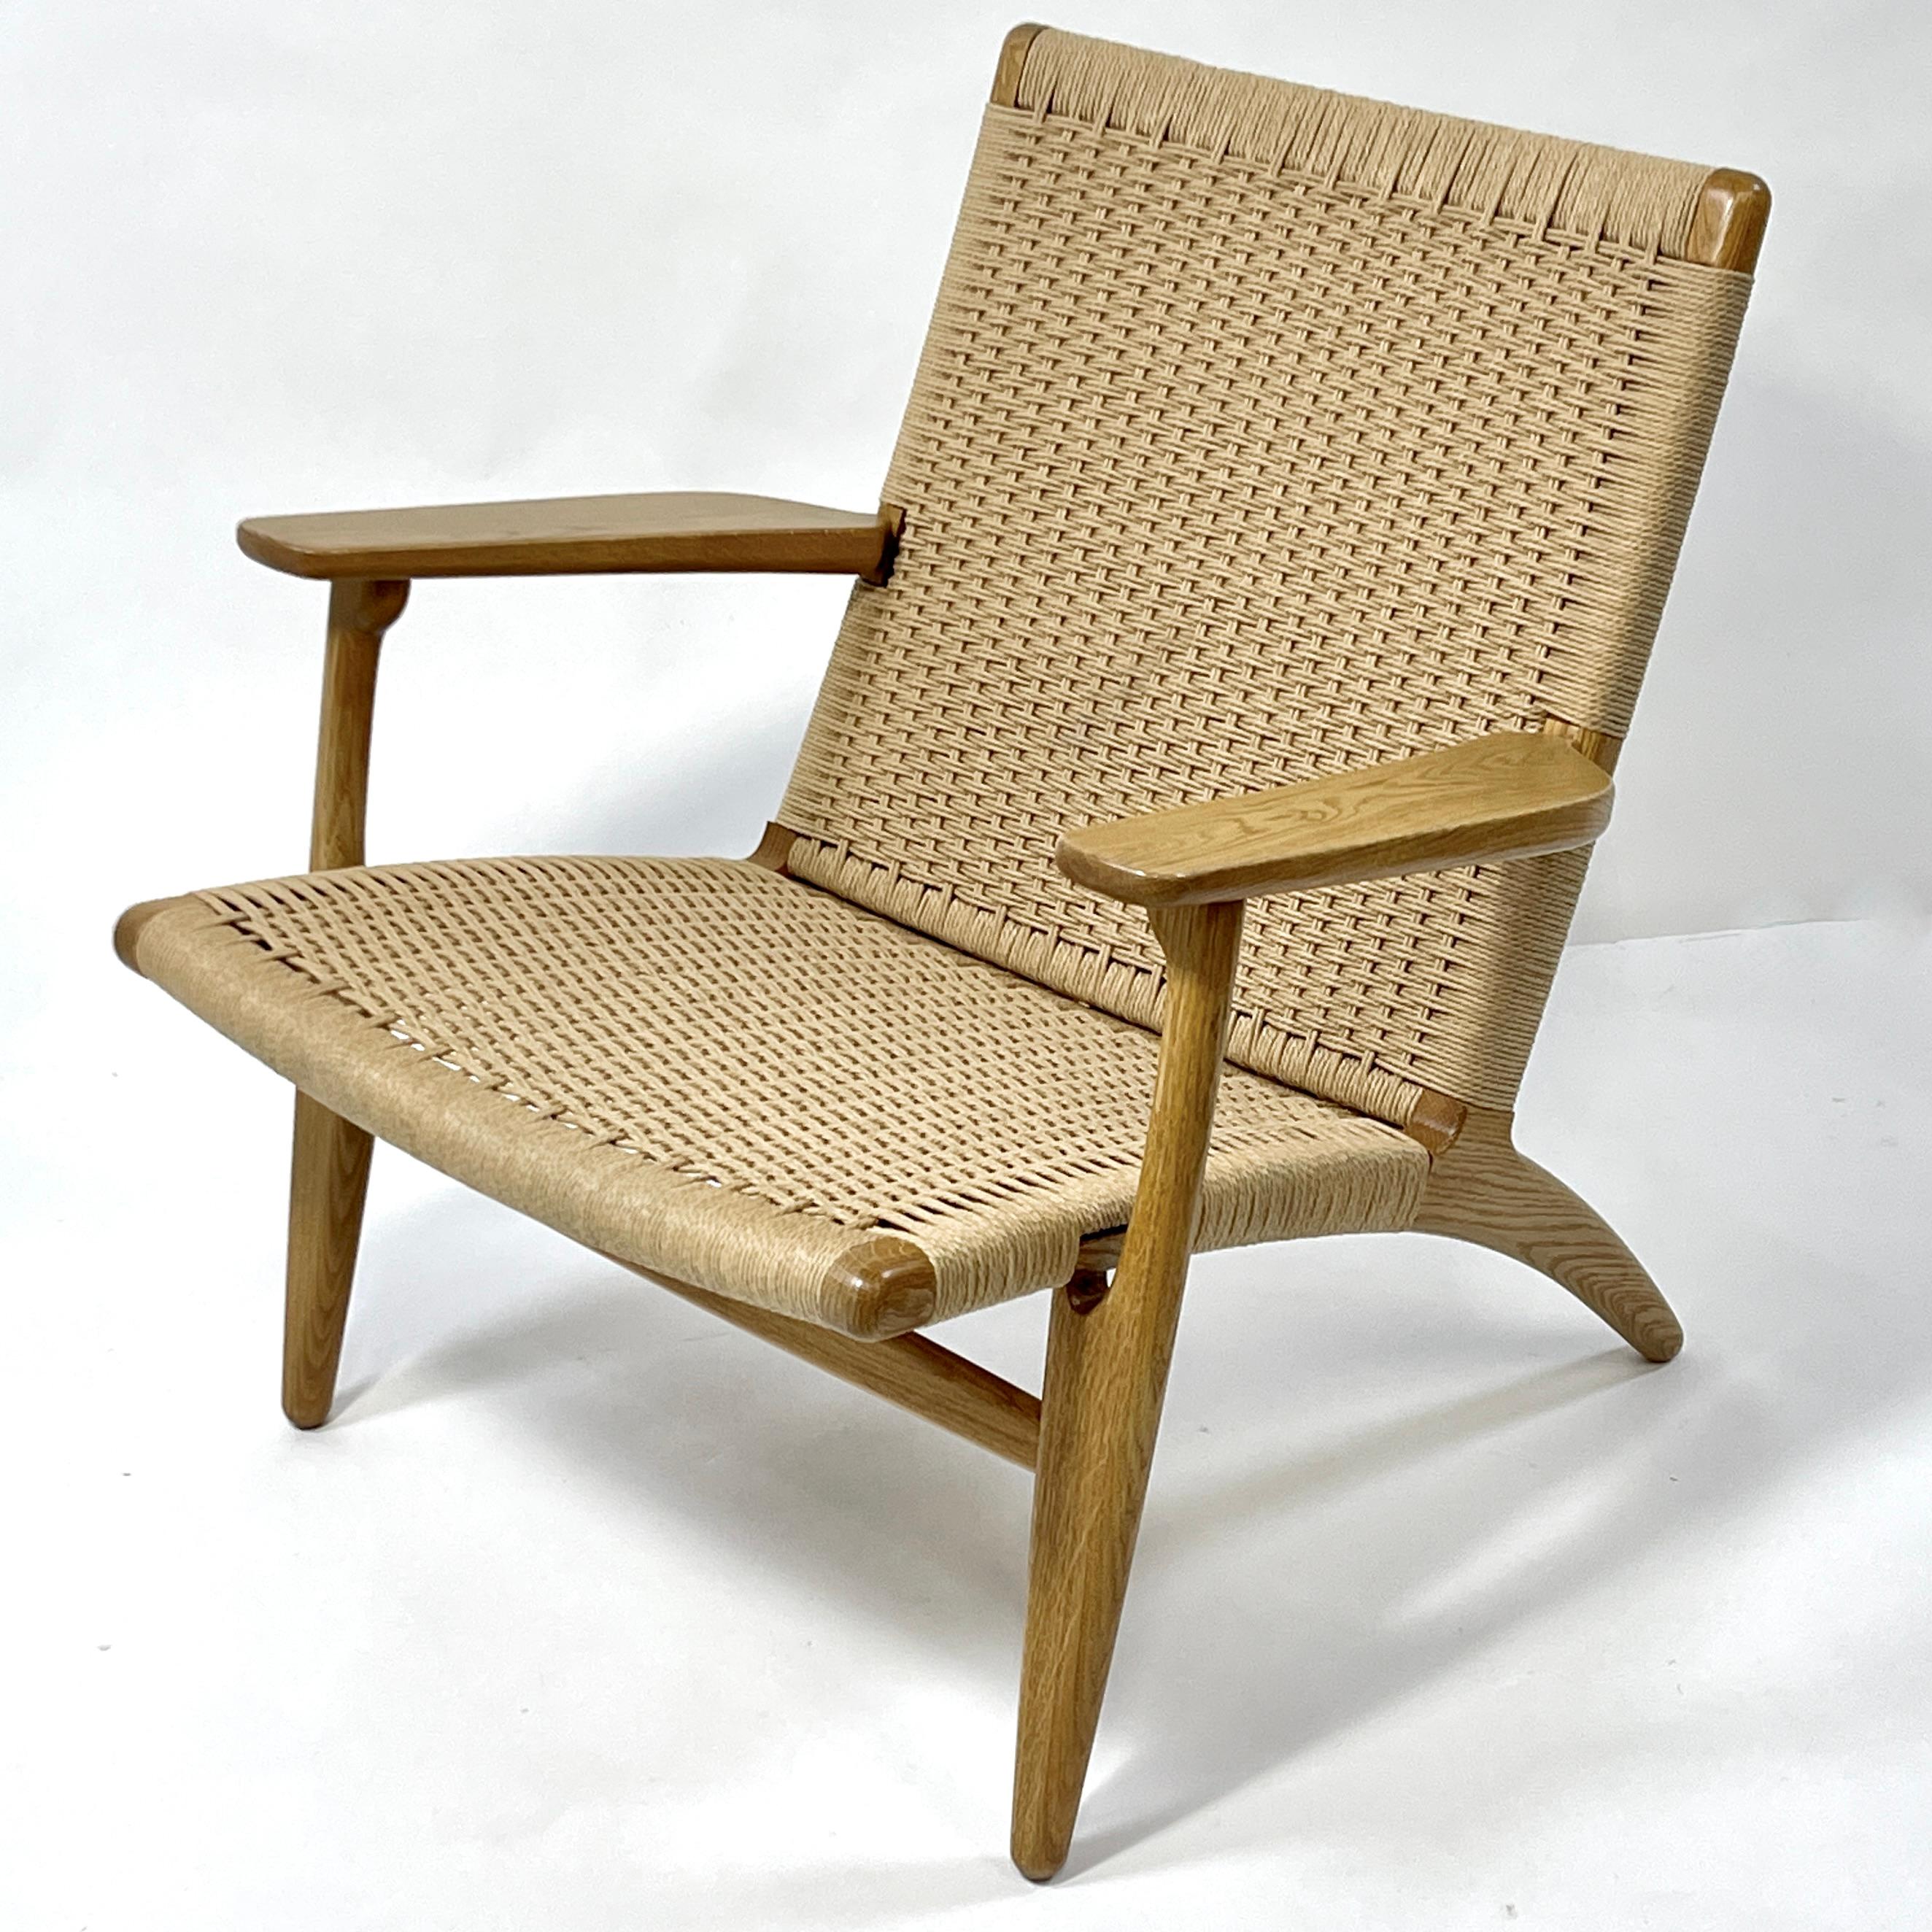 Dies ist ein geöltes Eichenholz und Papierkordel Hans Wegner Modell CH25 Lounge Stuhl. Ausgezeichnet und komfortabel. Solide handgefertigte Konstruktion. Wird immer noch von Carl Hansen & Sons hergestellt und vertrieben. Dies ist eine neuere